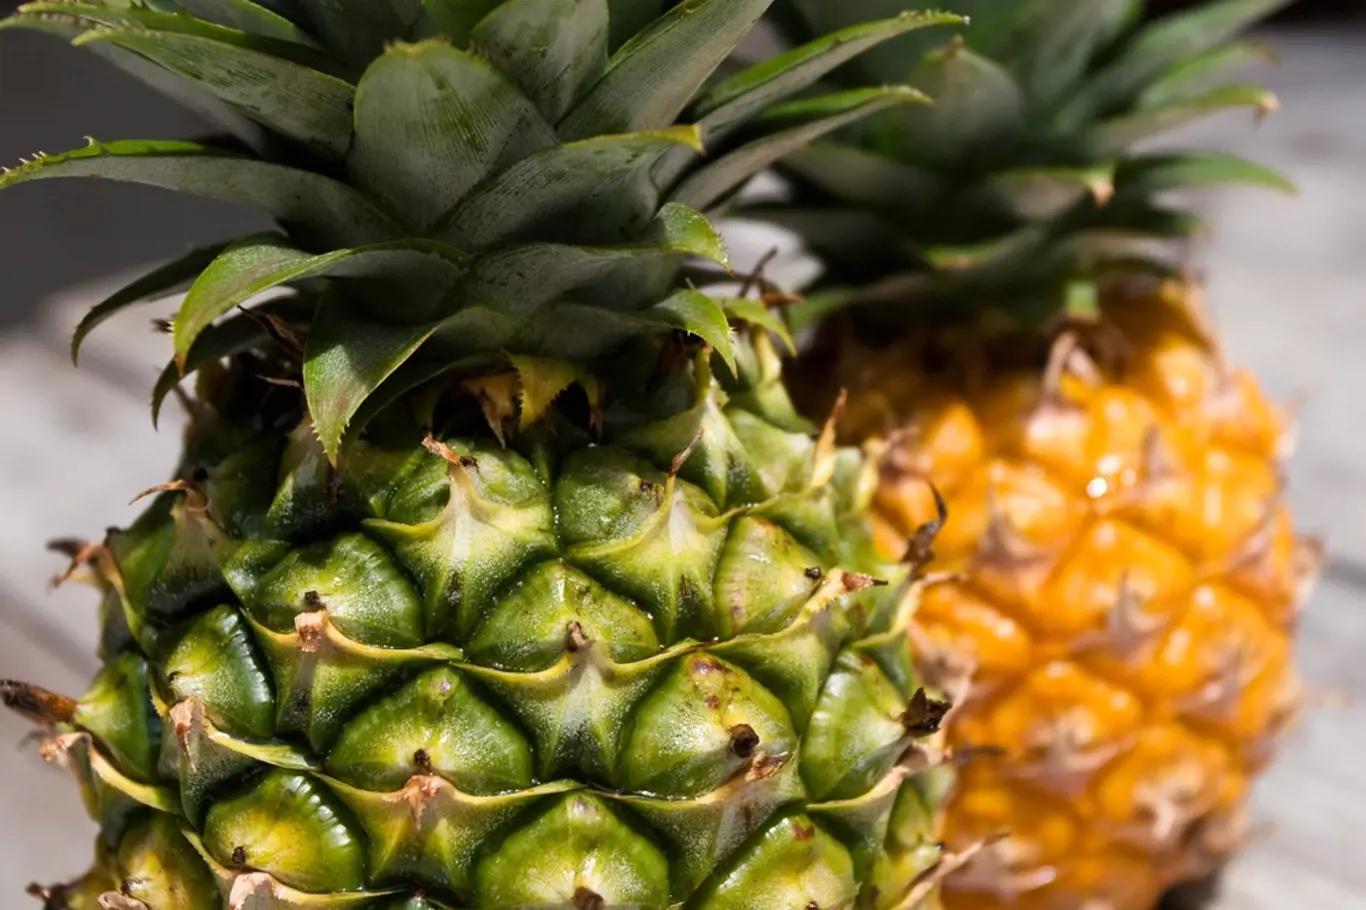 Plody ananasu patří mezi oblíbené ovoce.